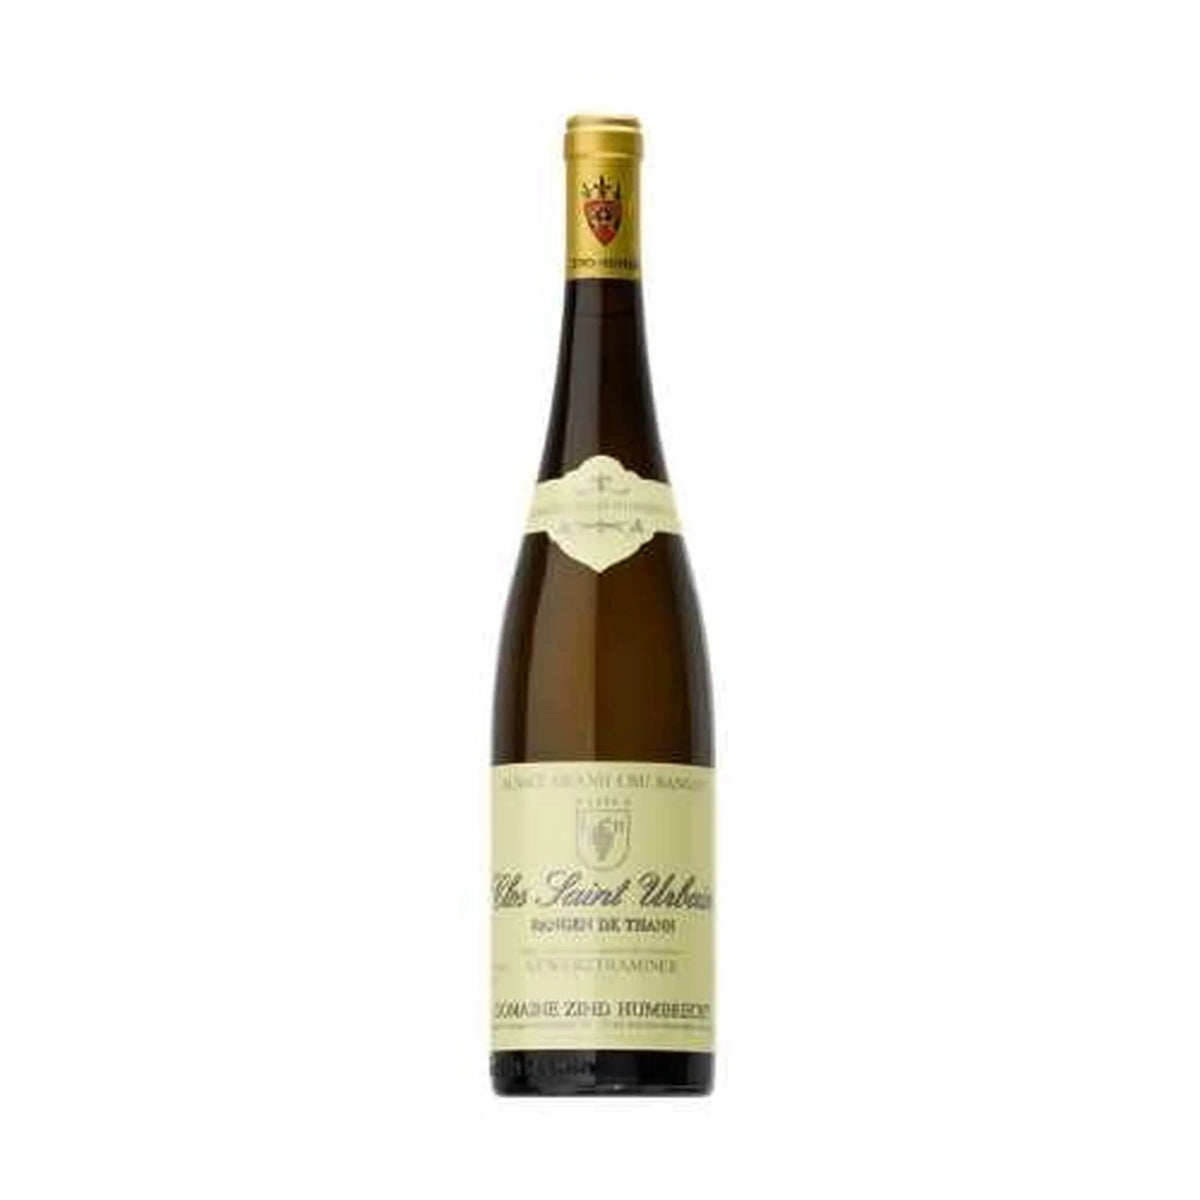 Domaine Zind-Humbrecht-Weißwein-Pinot Gris-2020 Pinot Gris Rangen de Thann Clos St Urbain-WINECOM